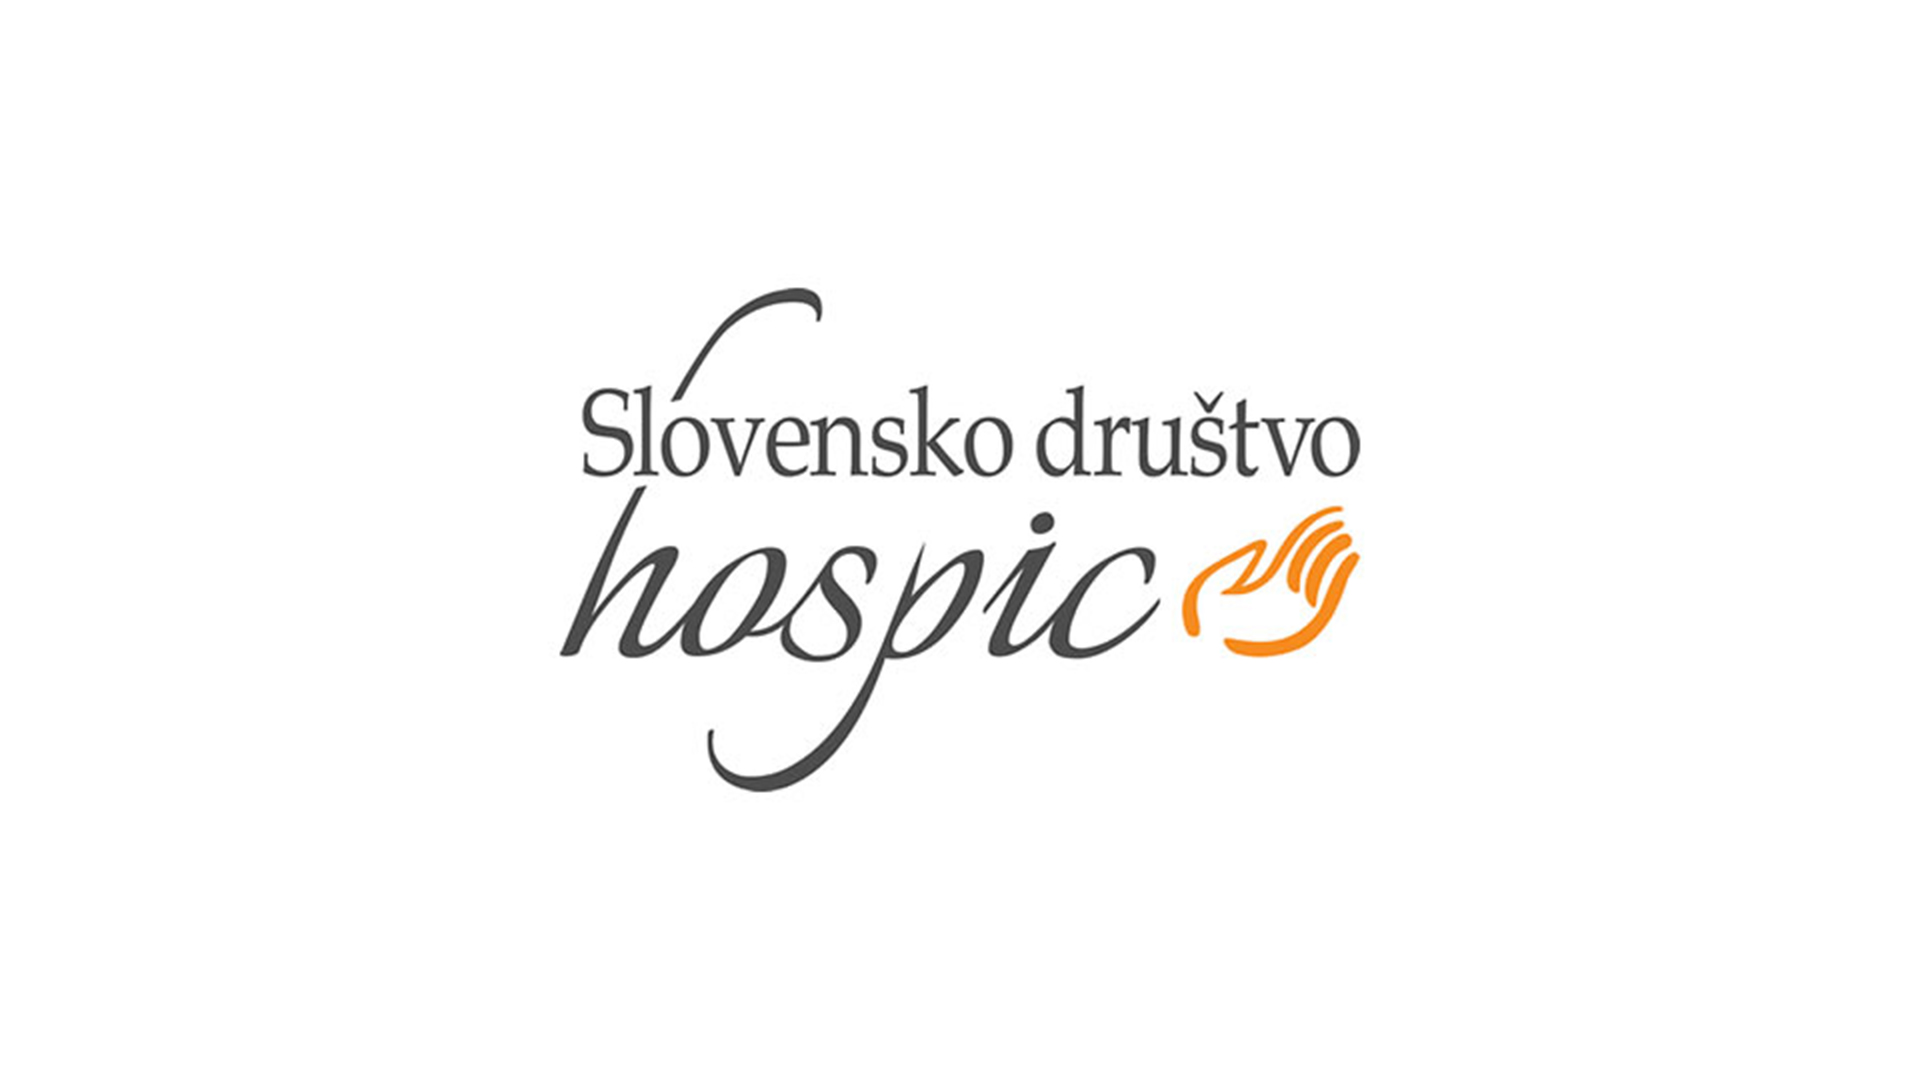  Zakaj sem se odločila postati prostovoljka pri Slovenskem društvu Hospic? 